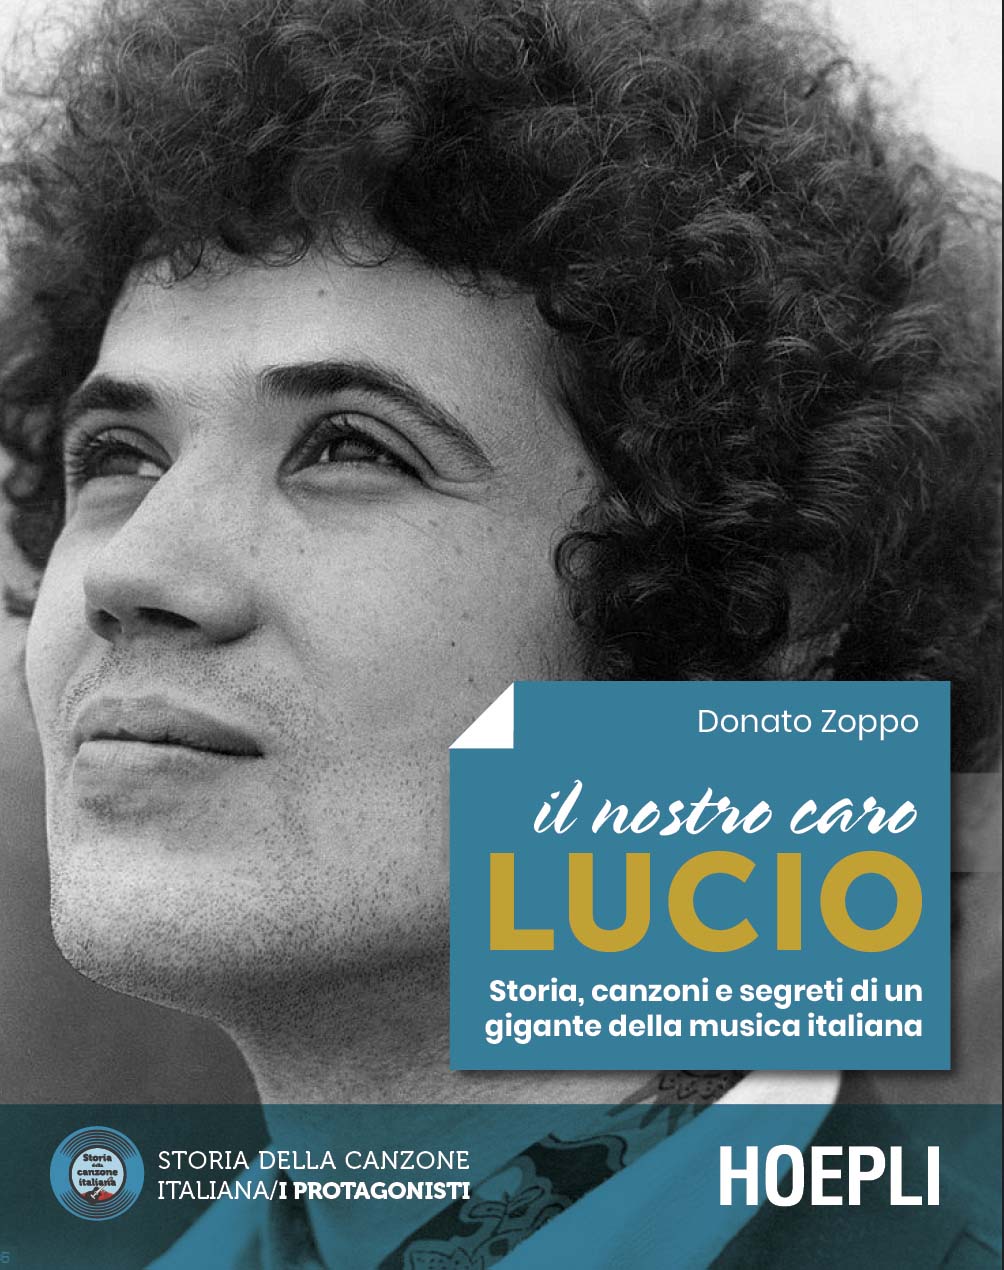 “Il nostro caro Lucio”, il libro di Donato Zoppo dedicato a Battisti